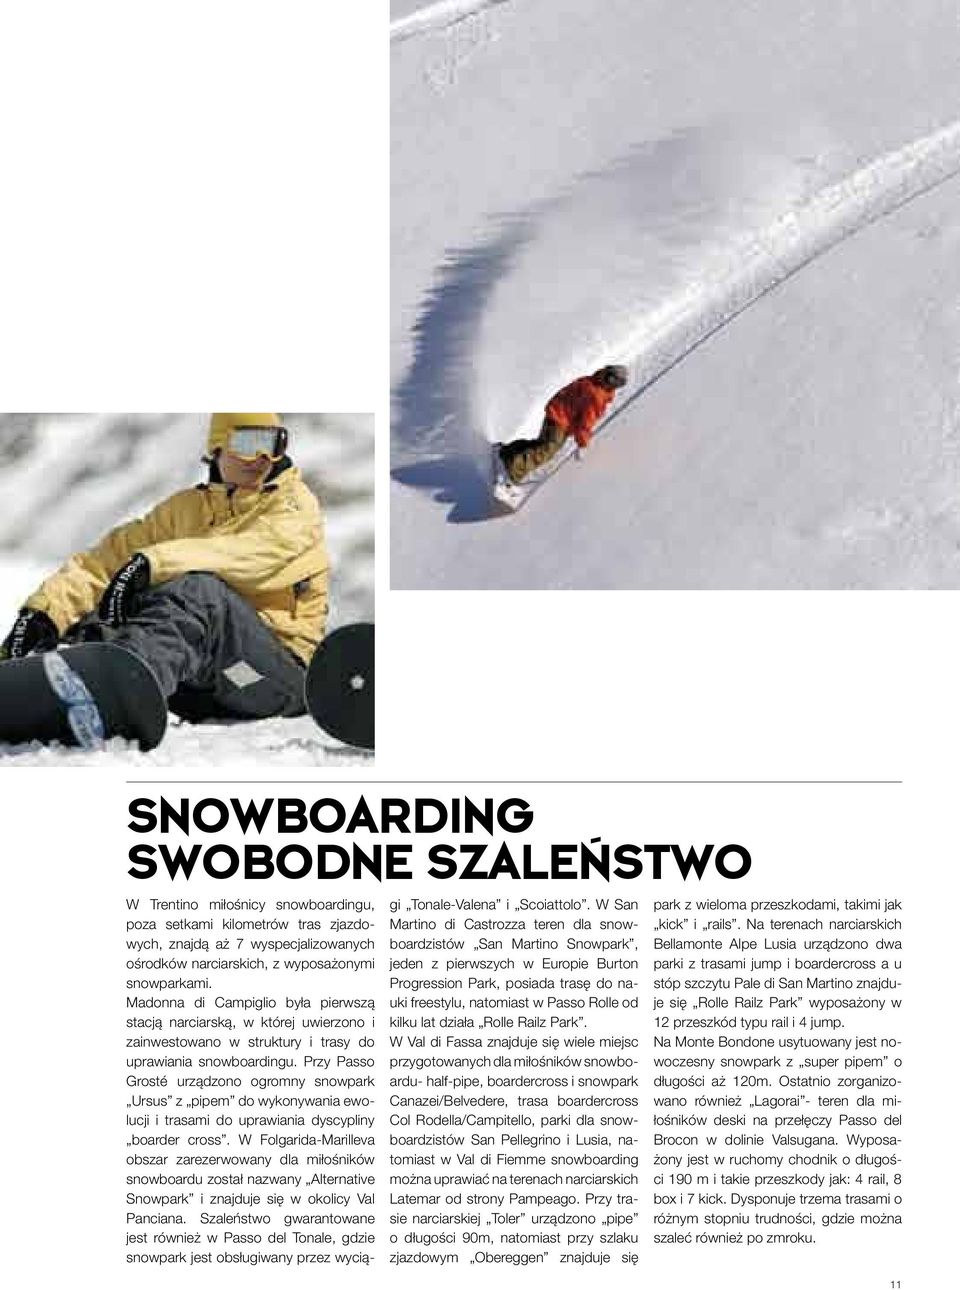 Przy Passo Grosté urządzono ogromny snowpark Ursus z pipem do wykonywania ewolucji i trasami do uprawiania dyscypliny boarder cross.